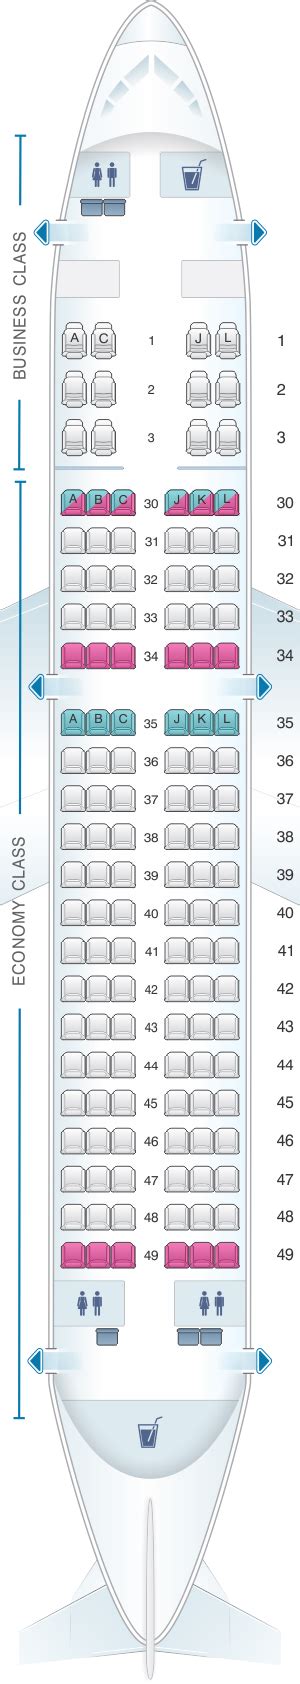 Seat Map Saudi Arabian Airlines Airbus A320 200 Standard